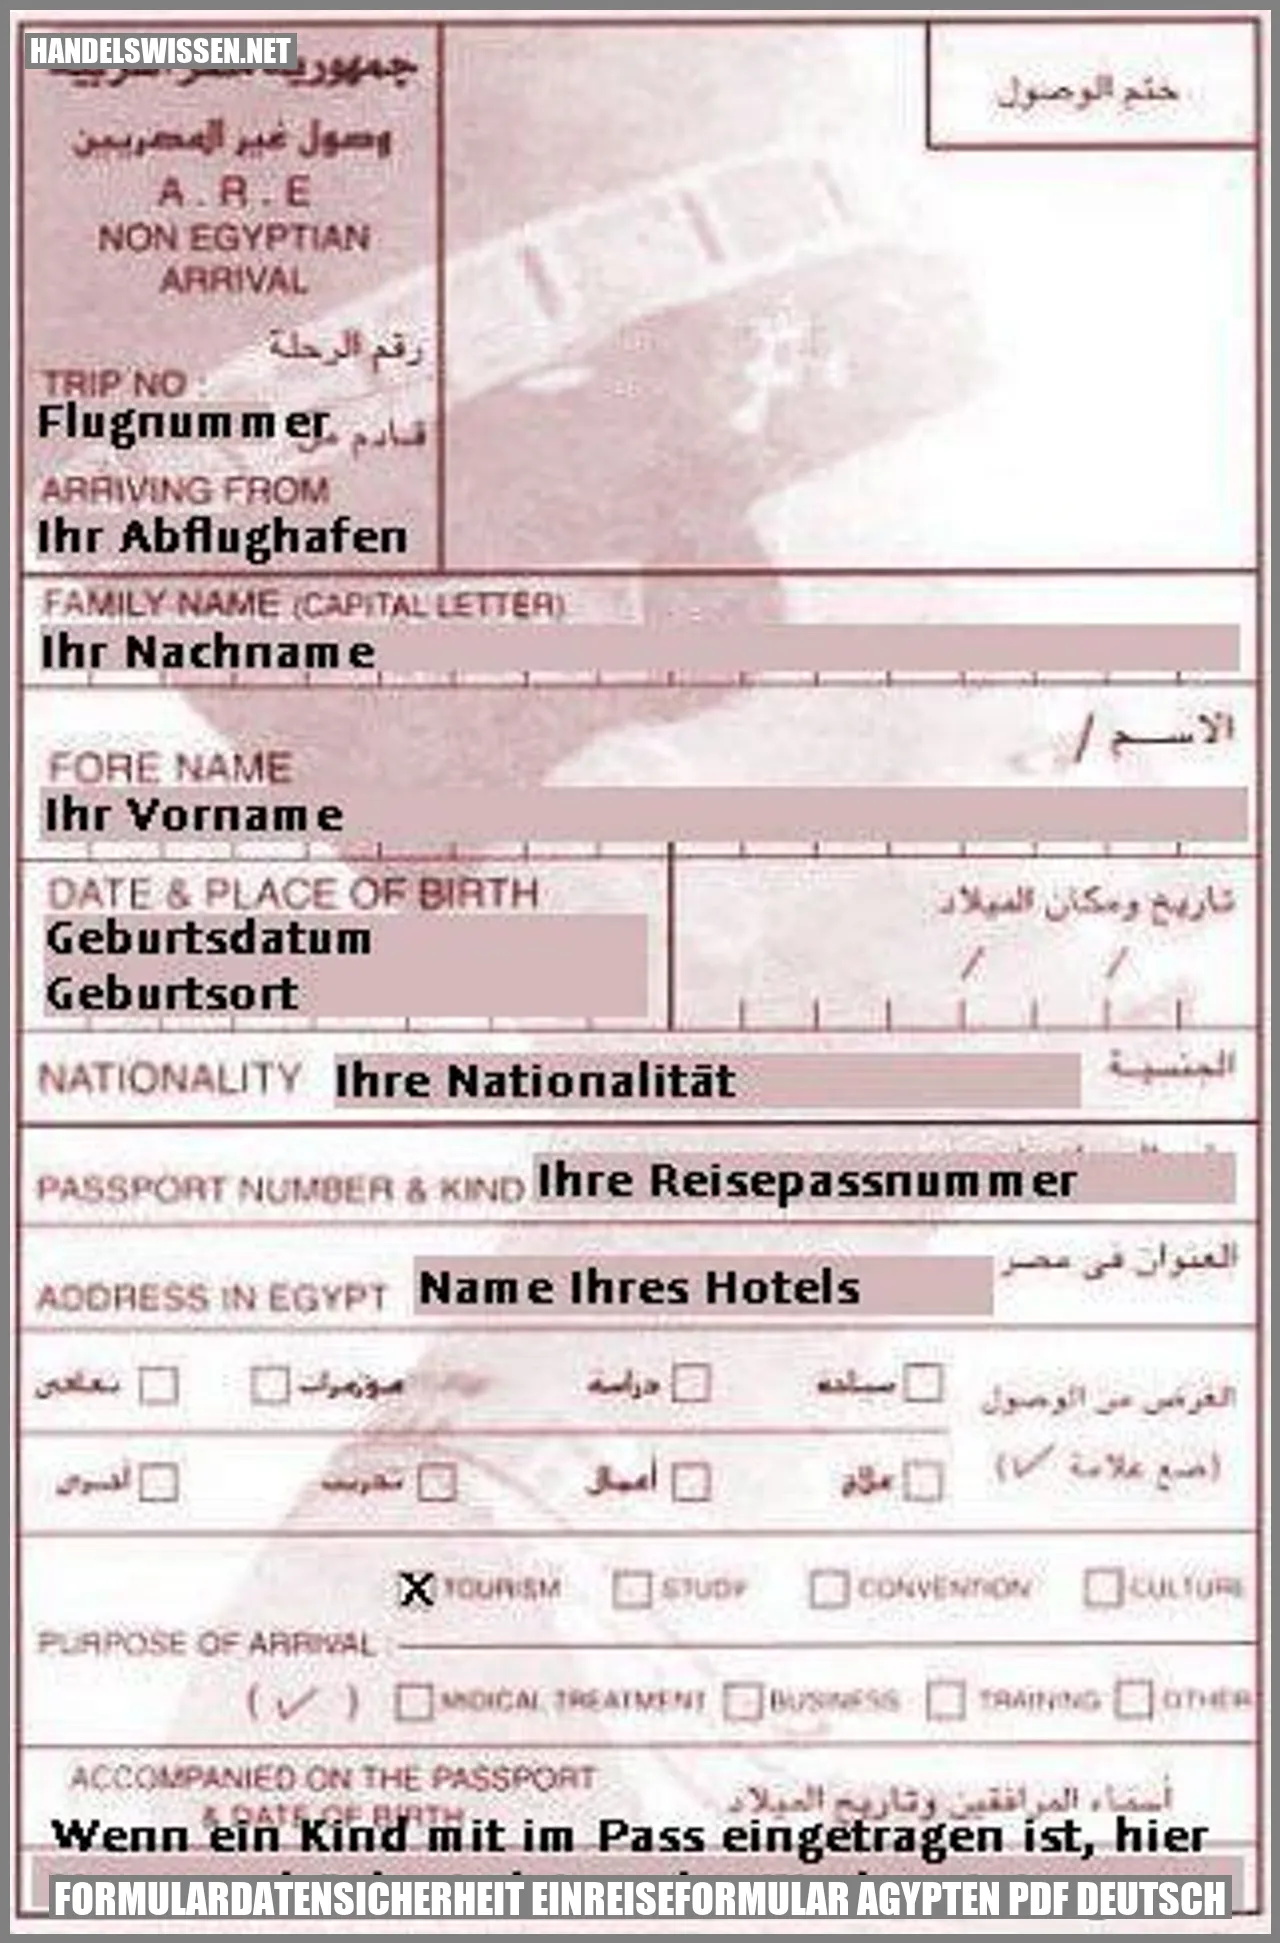 Bild: Formularsicherheit für das Einreiseformular Ägypten PDF auf Deutsch